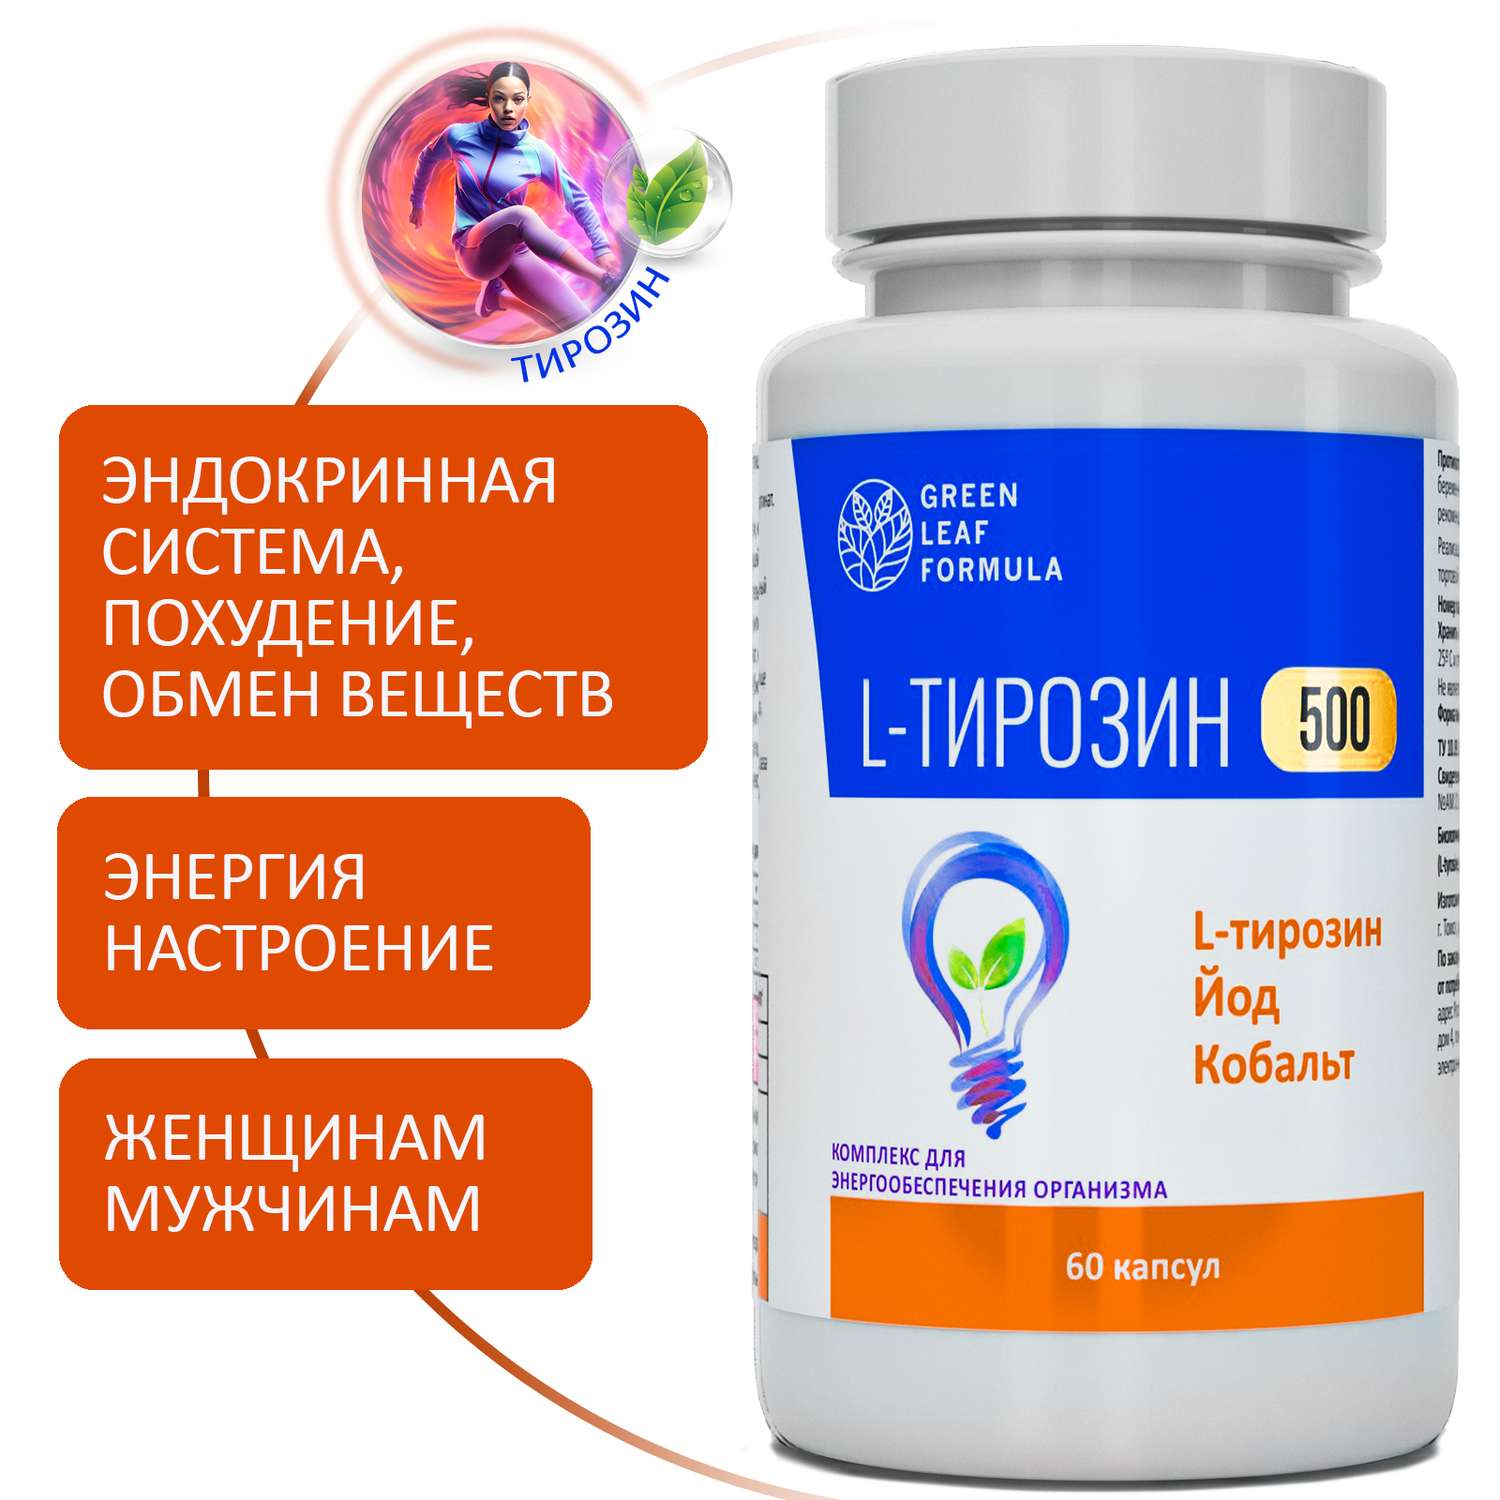 L-тирозин 500 мг аминокислота Green Leaf Formula йод витамины для энергии и щитовидной железы тирозин для похудения - фото 1